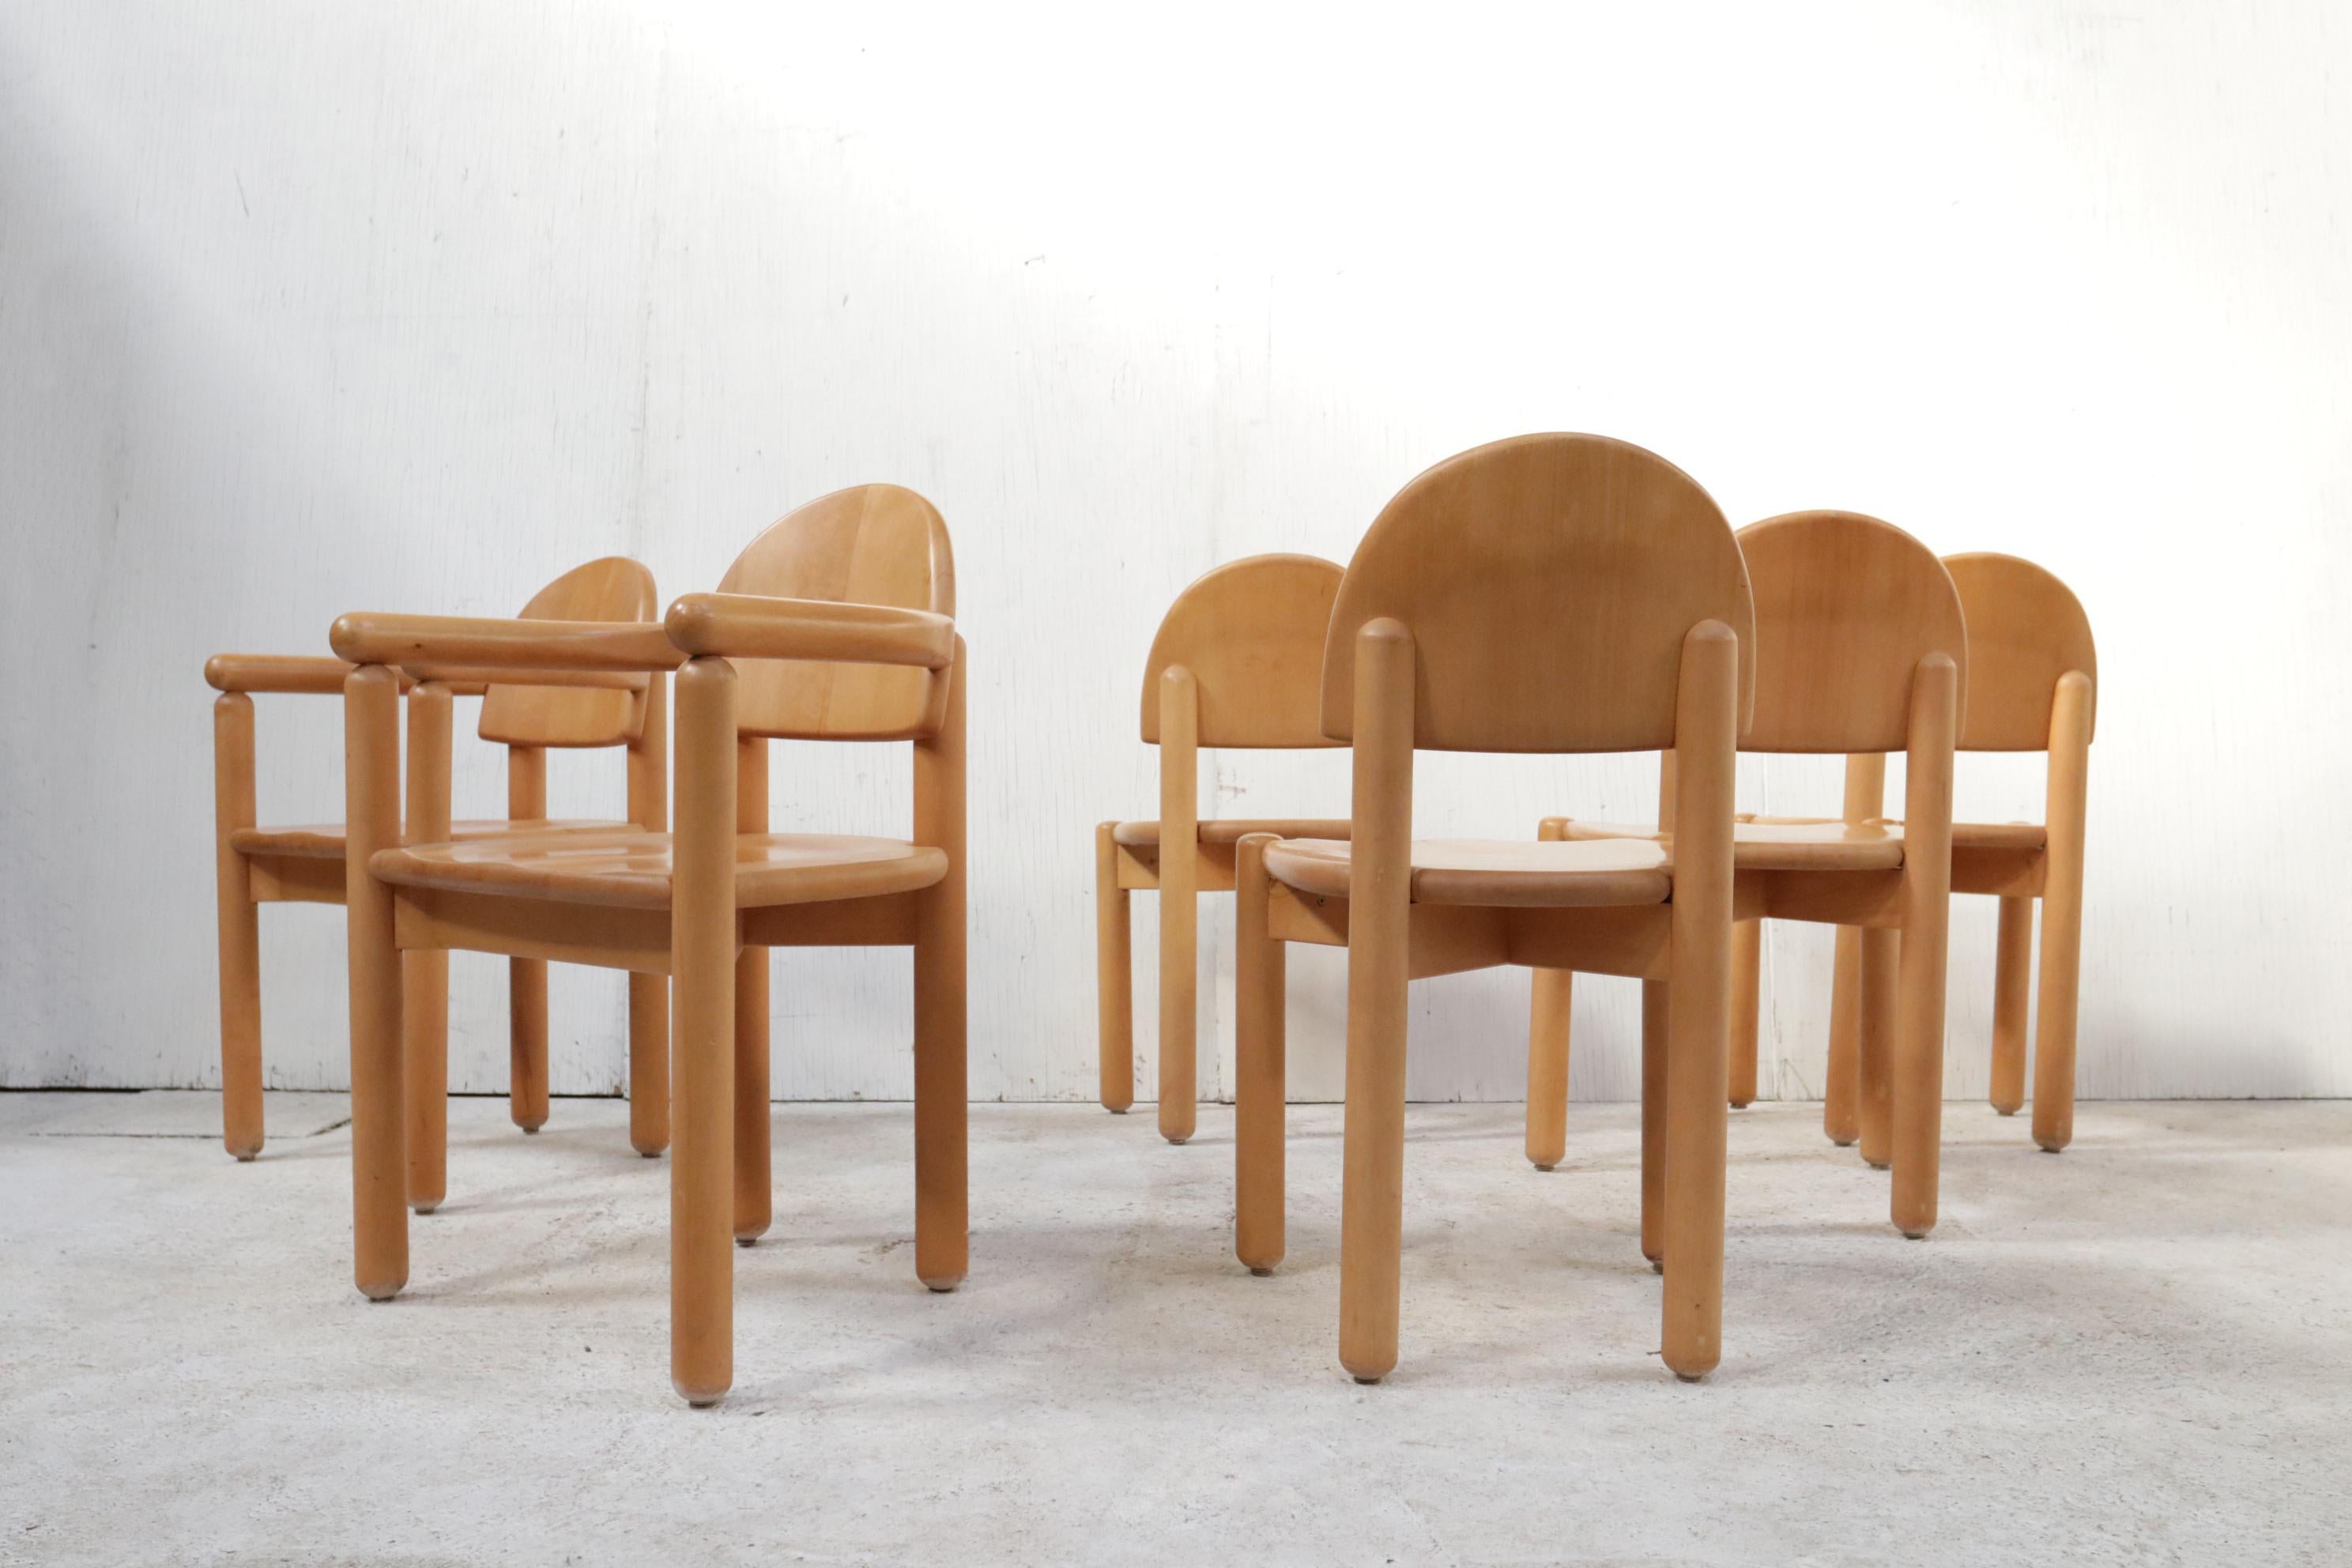 Schöner Satz von sechs sehr skulpturalen Esszimmerstühlen aus Beeche-Holz des schwedischen Architekten und Designers Rainer Daumiller, hergestellt von Hirtshalls Sawmills. 
Die Variante Buche ist seltener zu finden als die Kiefer.
Sie sind auch